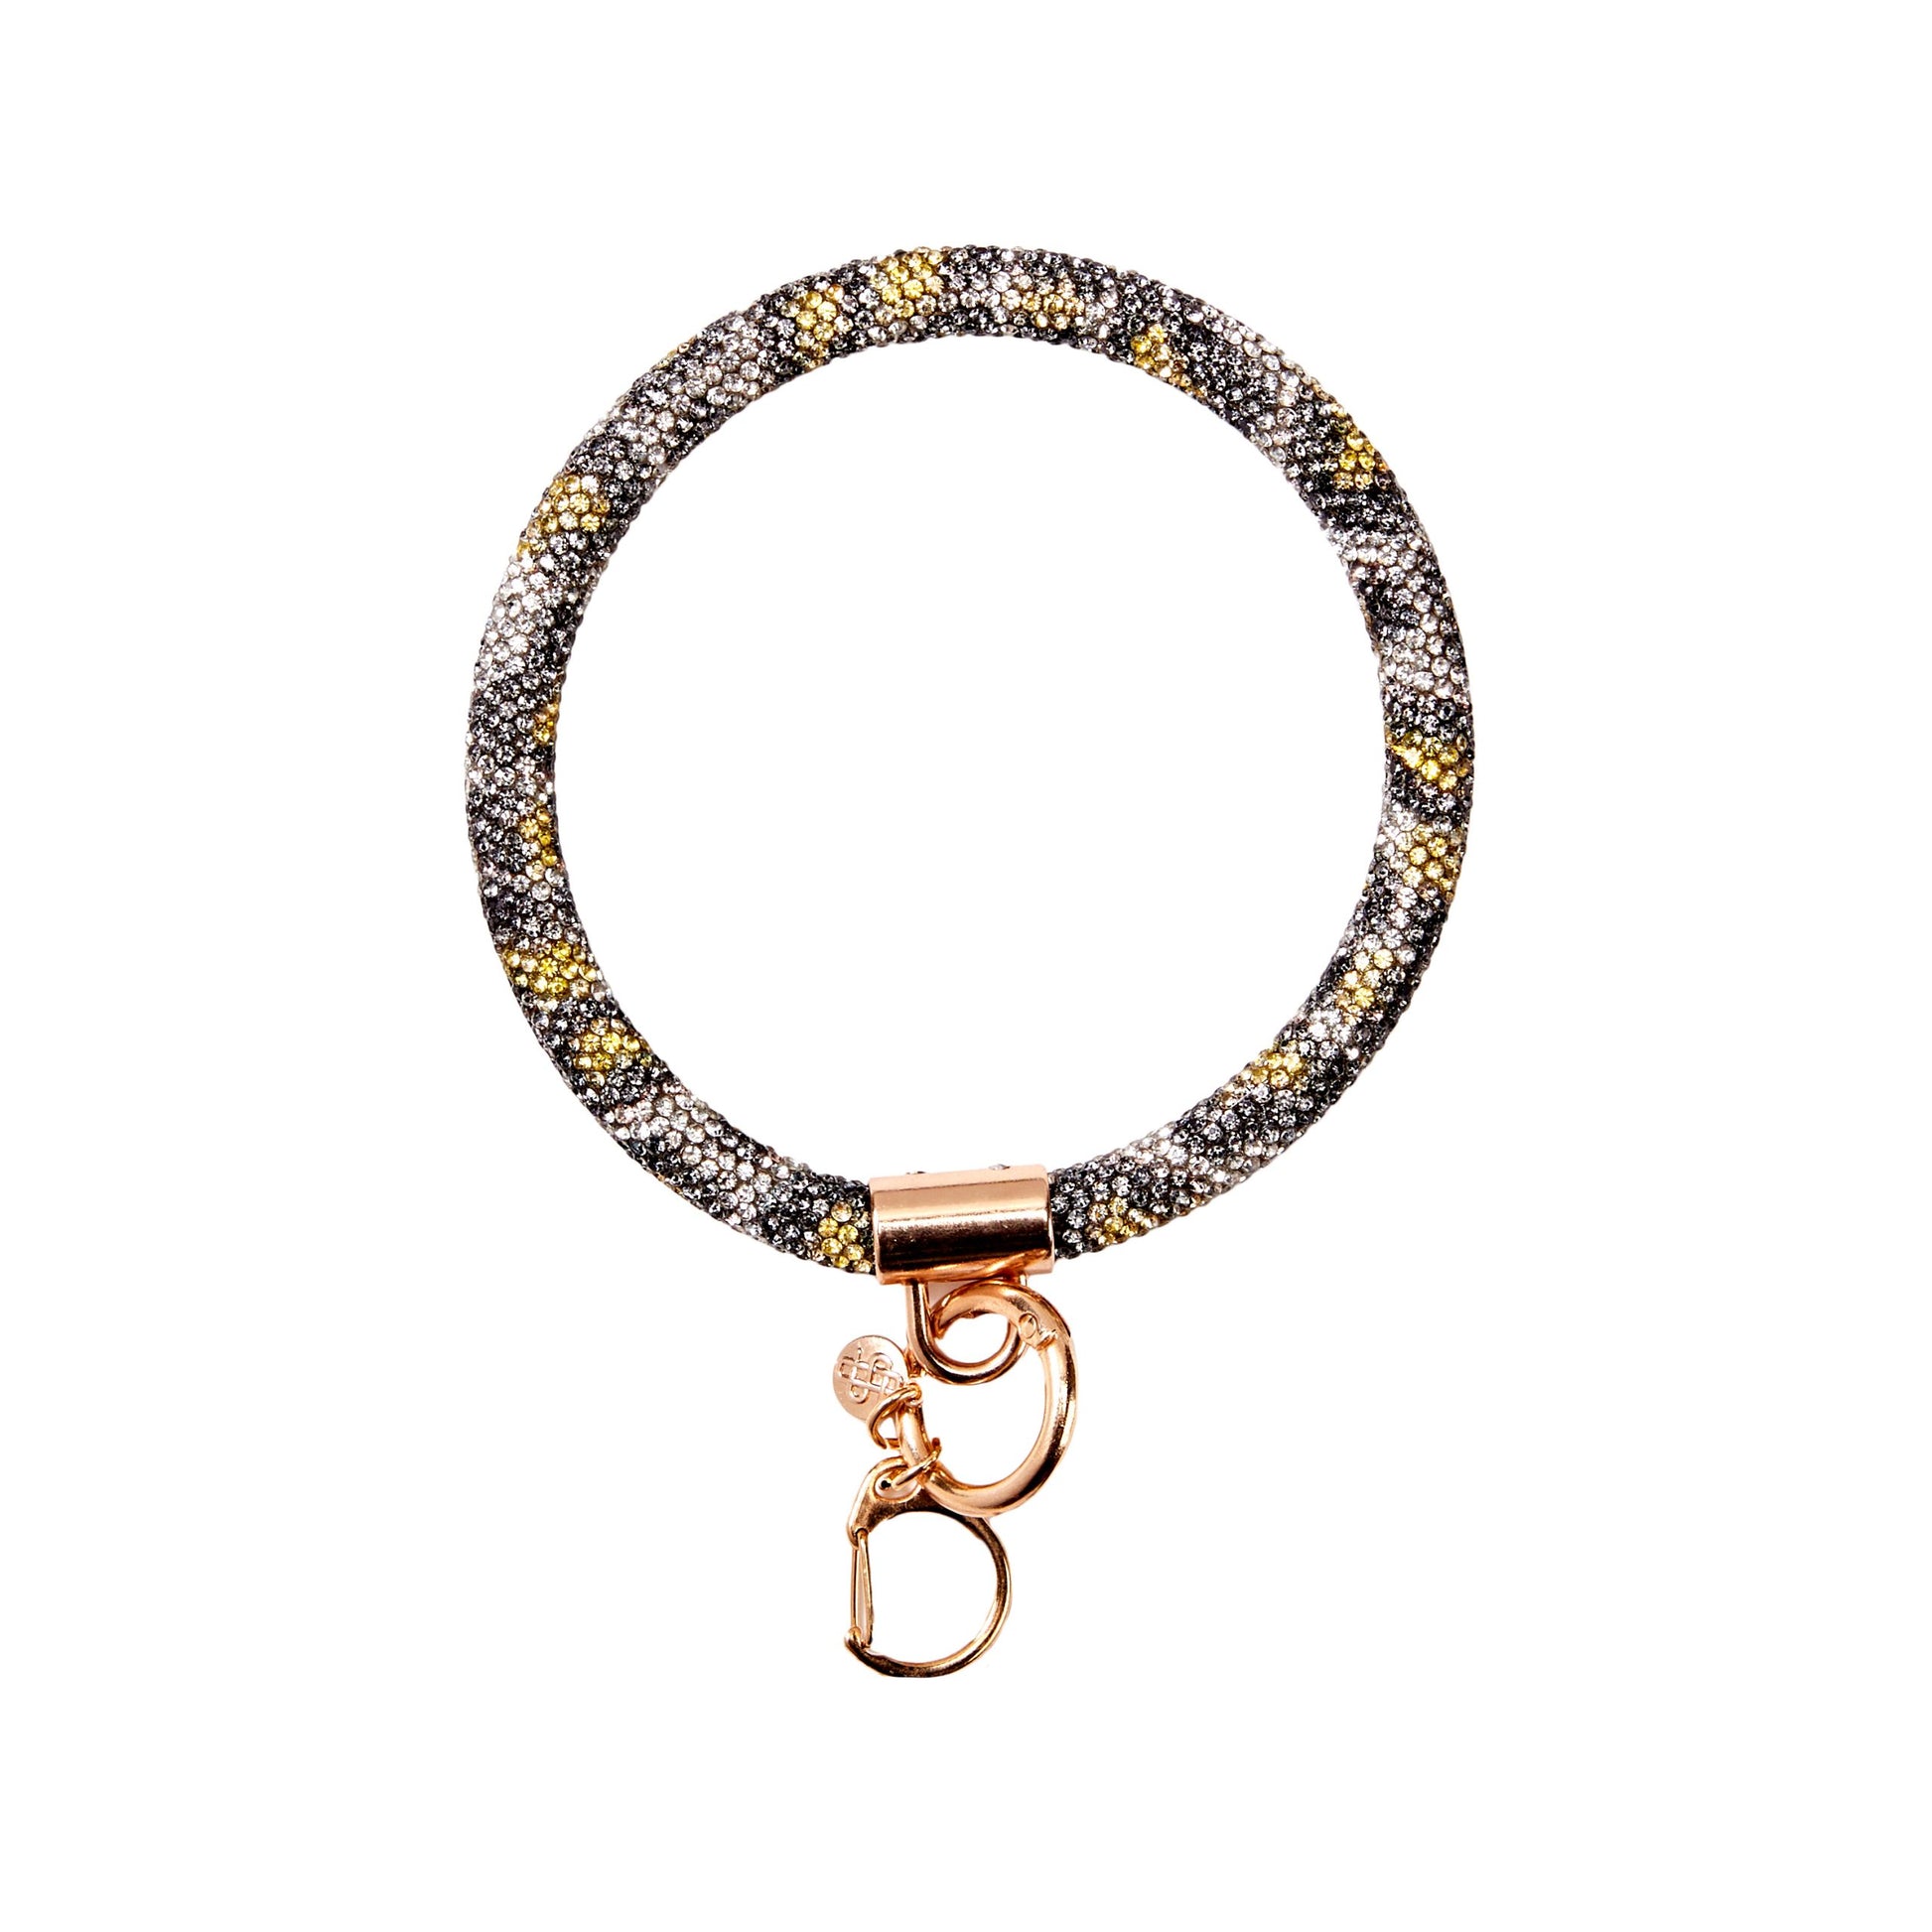 Stunning Wristlet Leopard Print Bangle Bracelet Key Chain Ring Clip Holder, 3 Inside Diameter